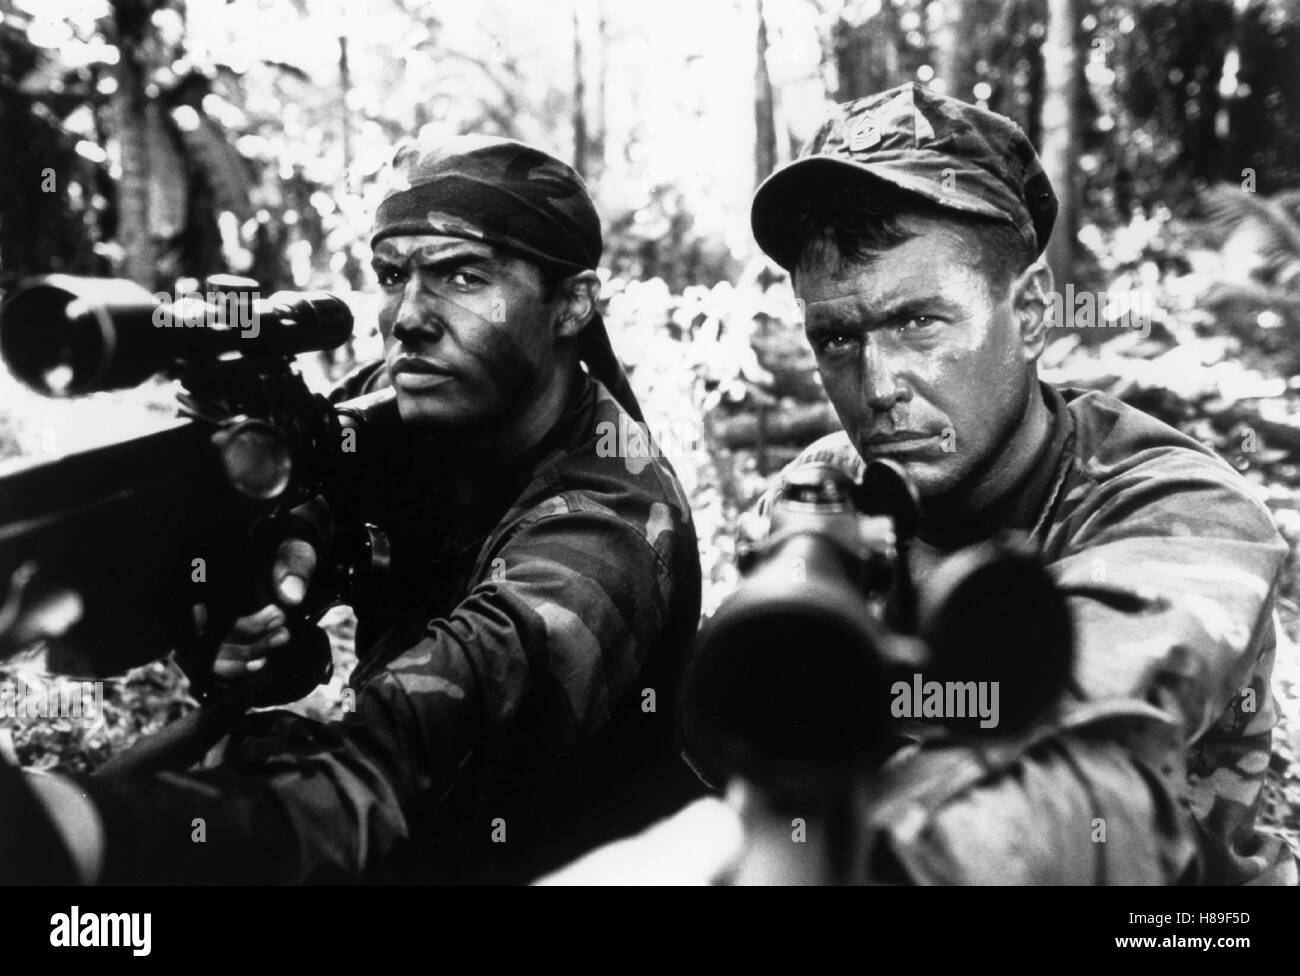 Sniper - Der Scharfschütze, (SNIPER) USA 1993, Regie: Luis Llosa, BILLY ZANE, TOM BERENGER, Key: Waffe, Gewehr, Zielfernrohr Stock Photo